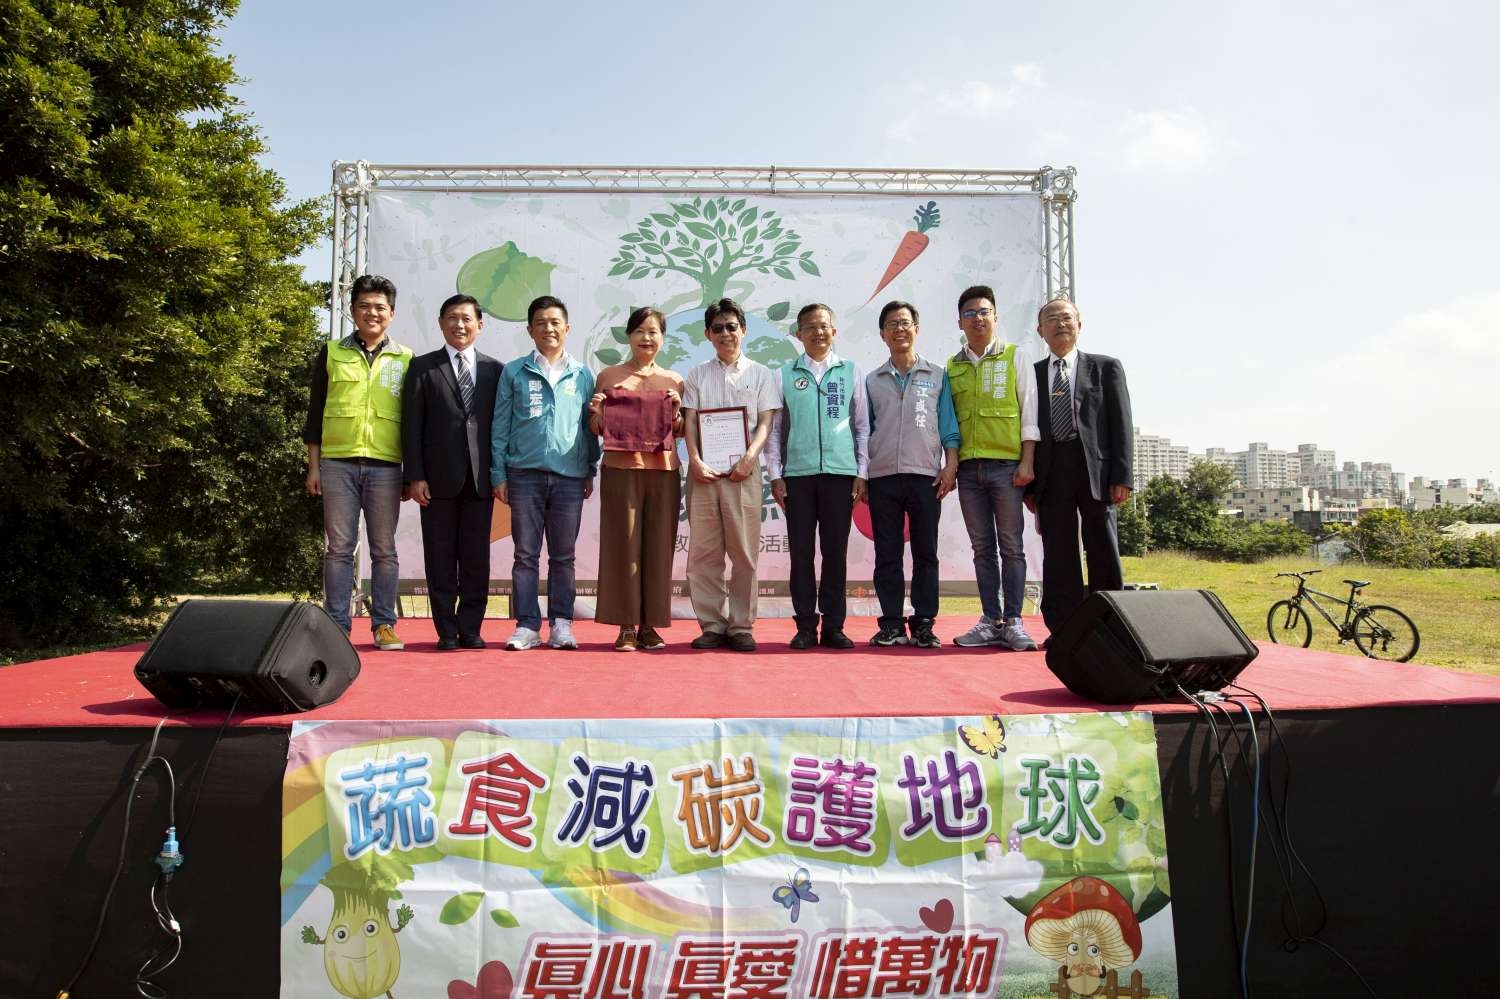 吃素做環保！新竹市低碳蔬食活動2000人減碳達1560公斤小圖共6張，pic2